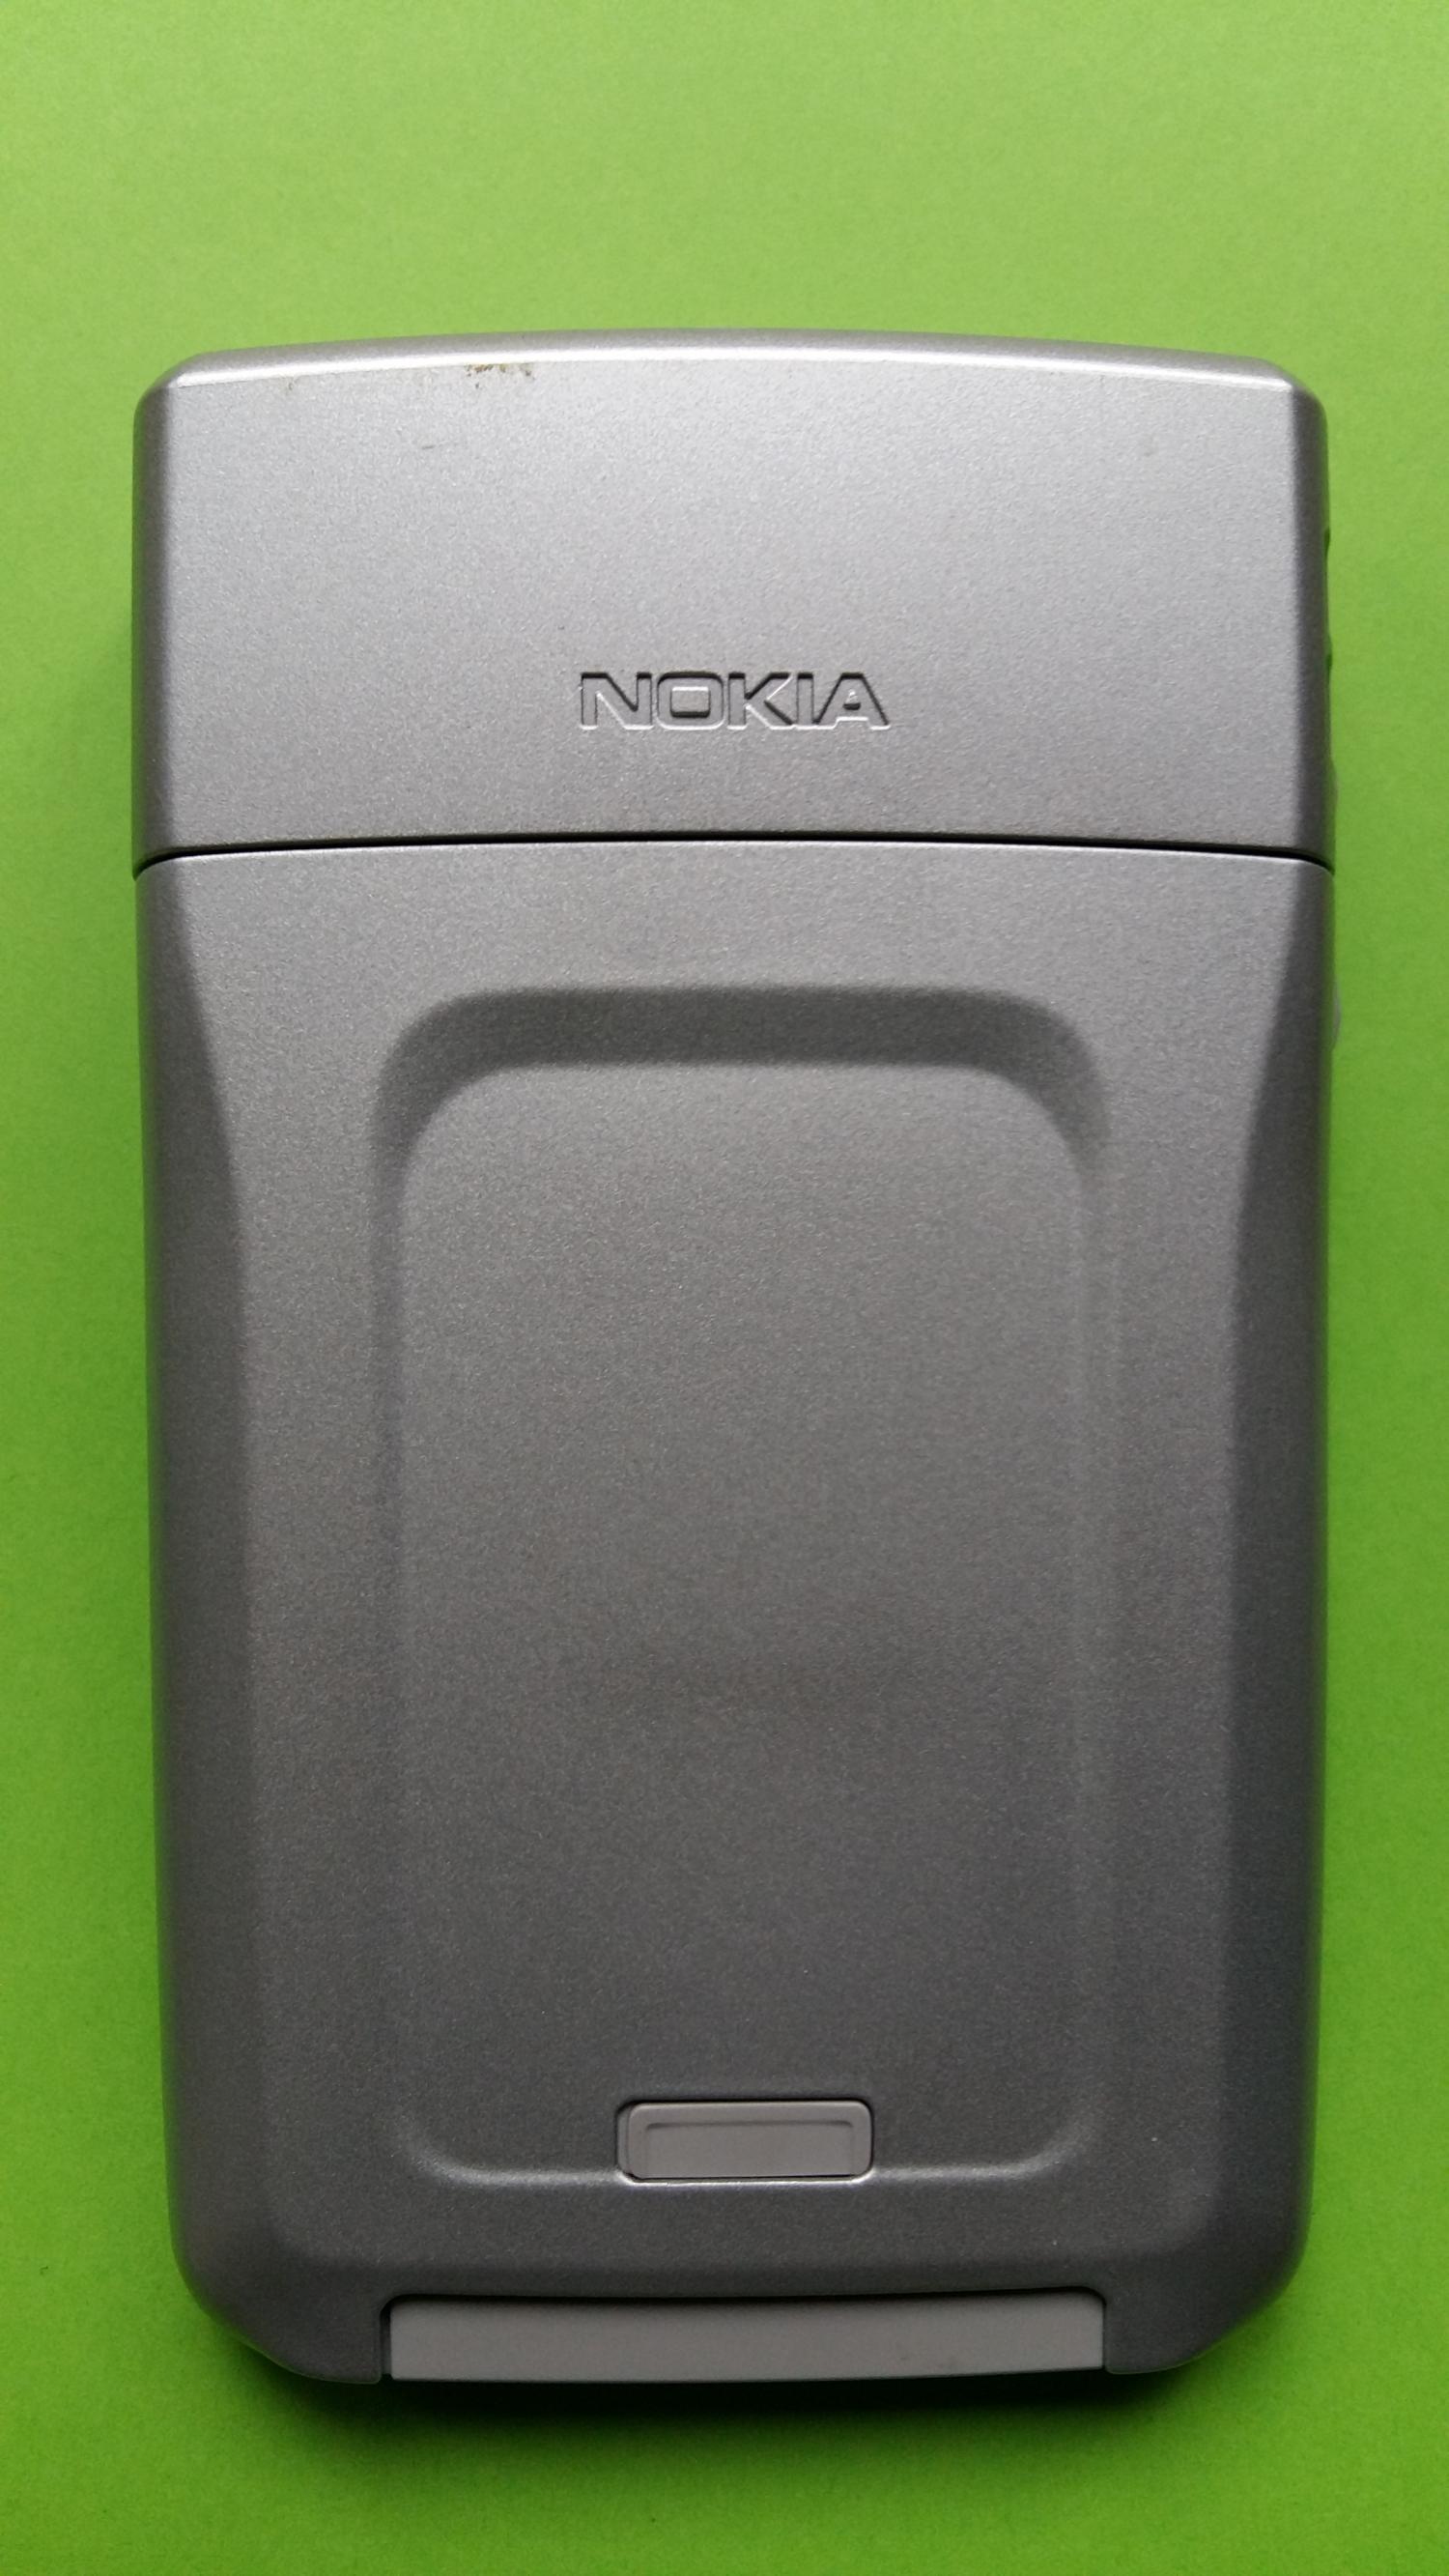 image-7339191-Nokia E61-1 (1)2.jpg